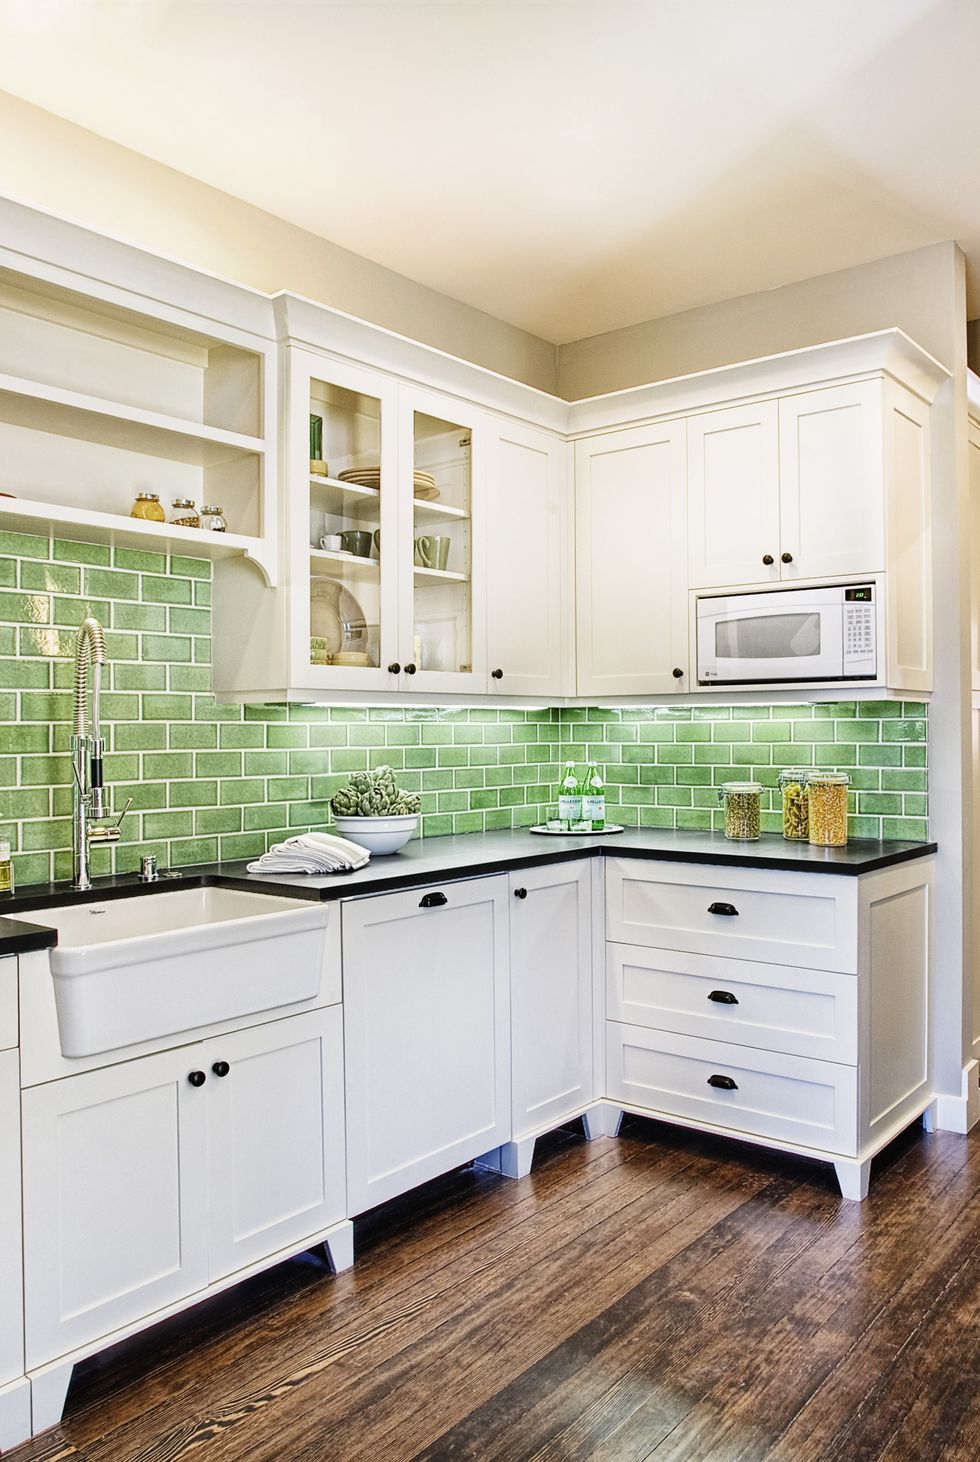 20 Chic Kitchen Backsplash Ideas Tile, Green Backsplash Tile